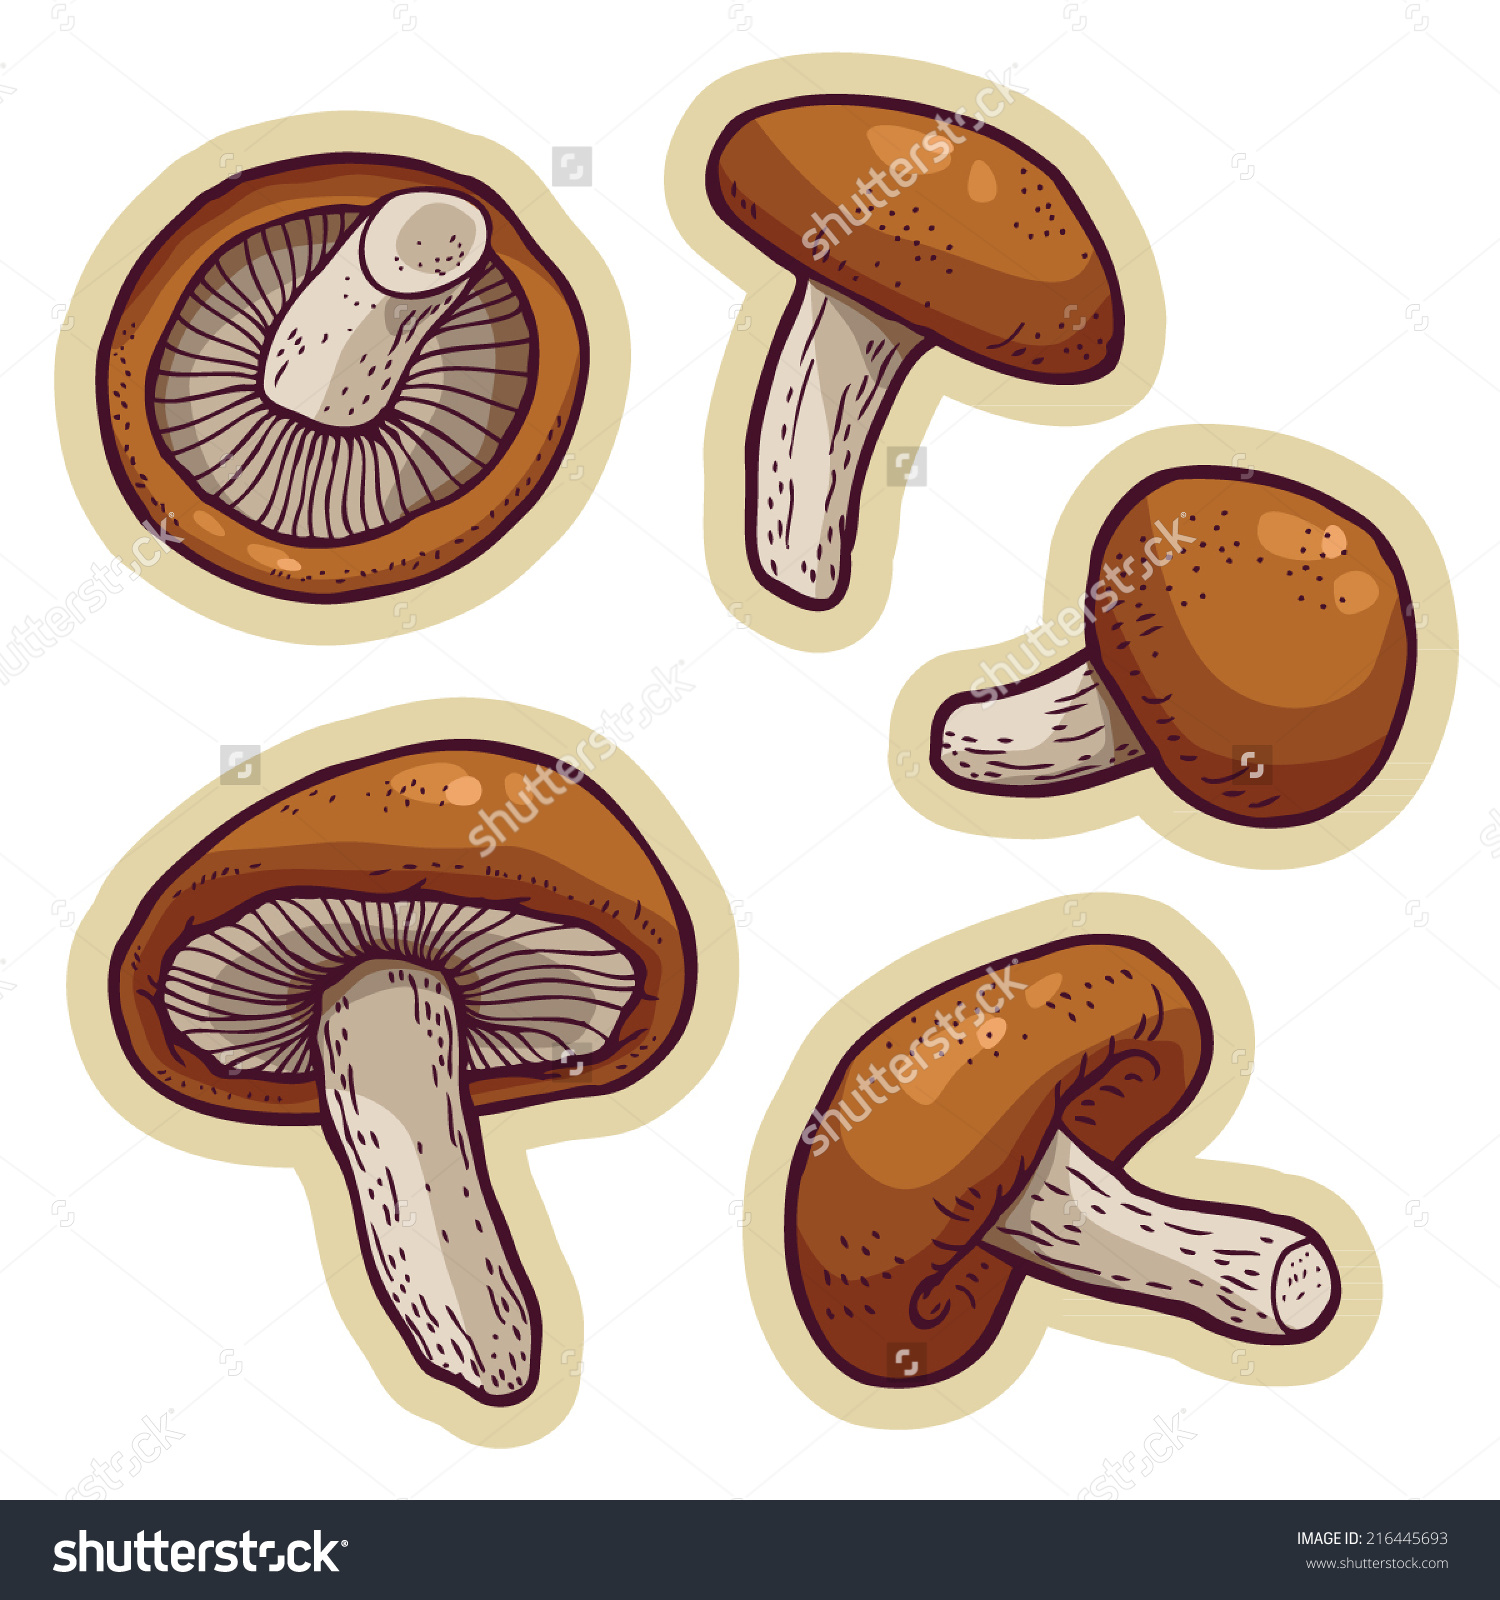 morel mushroom clip art - photo #34